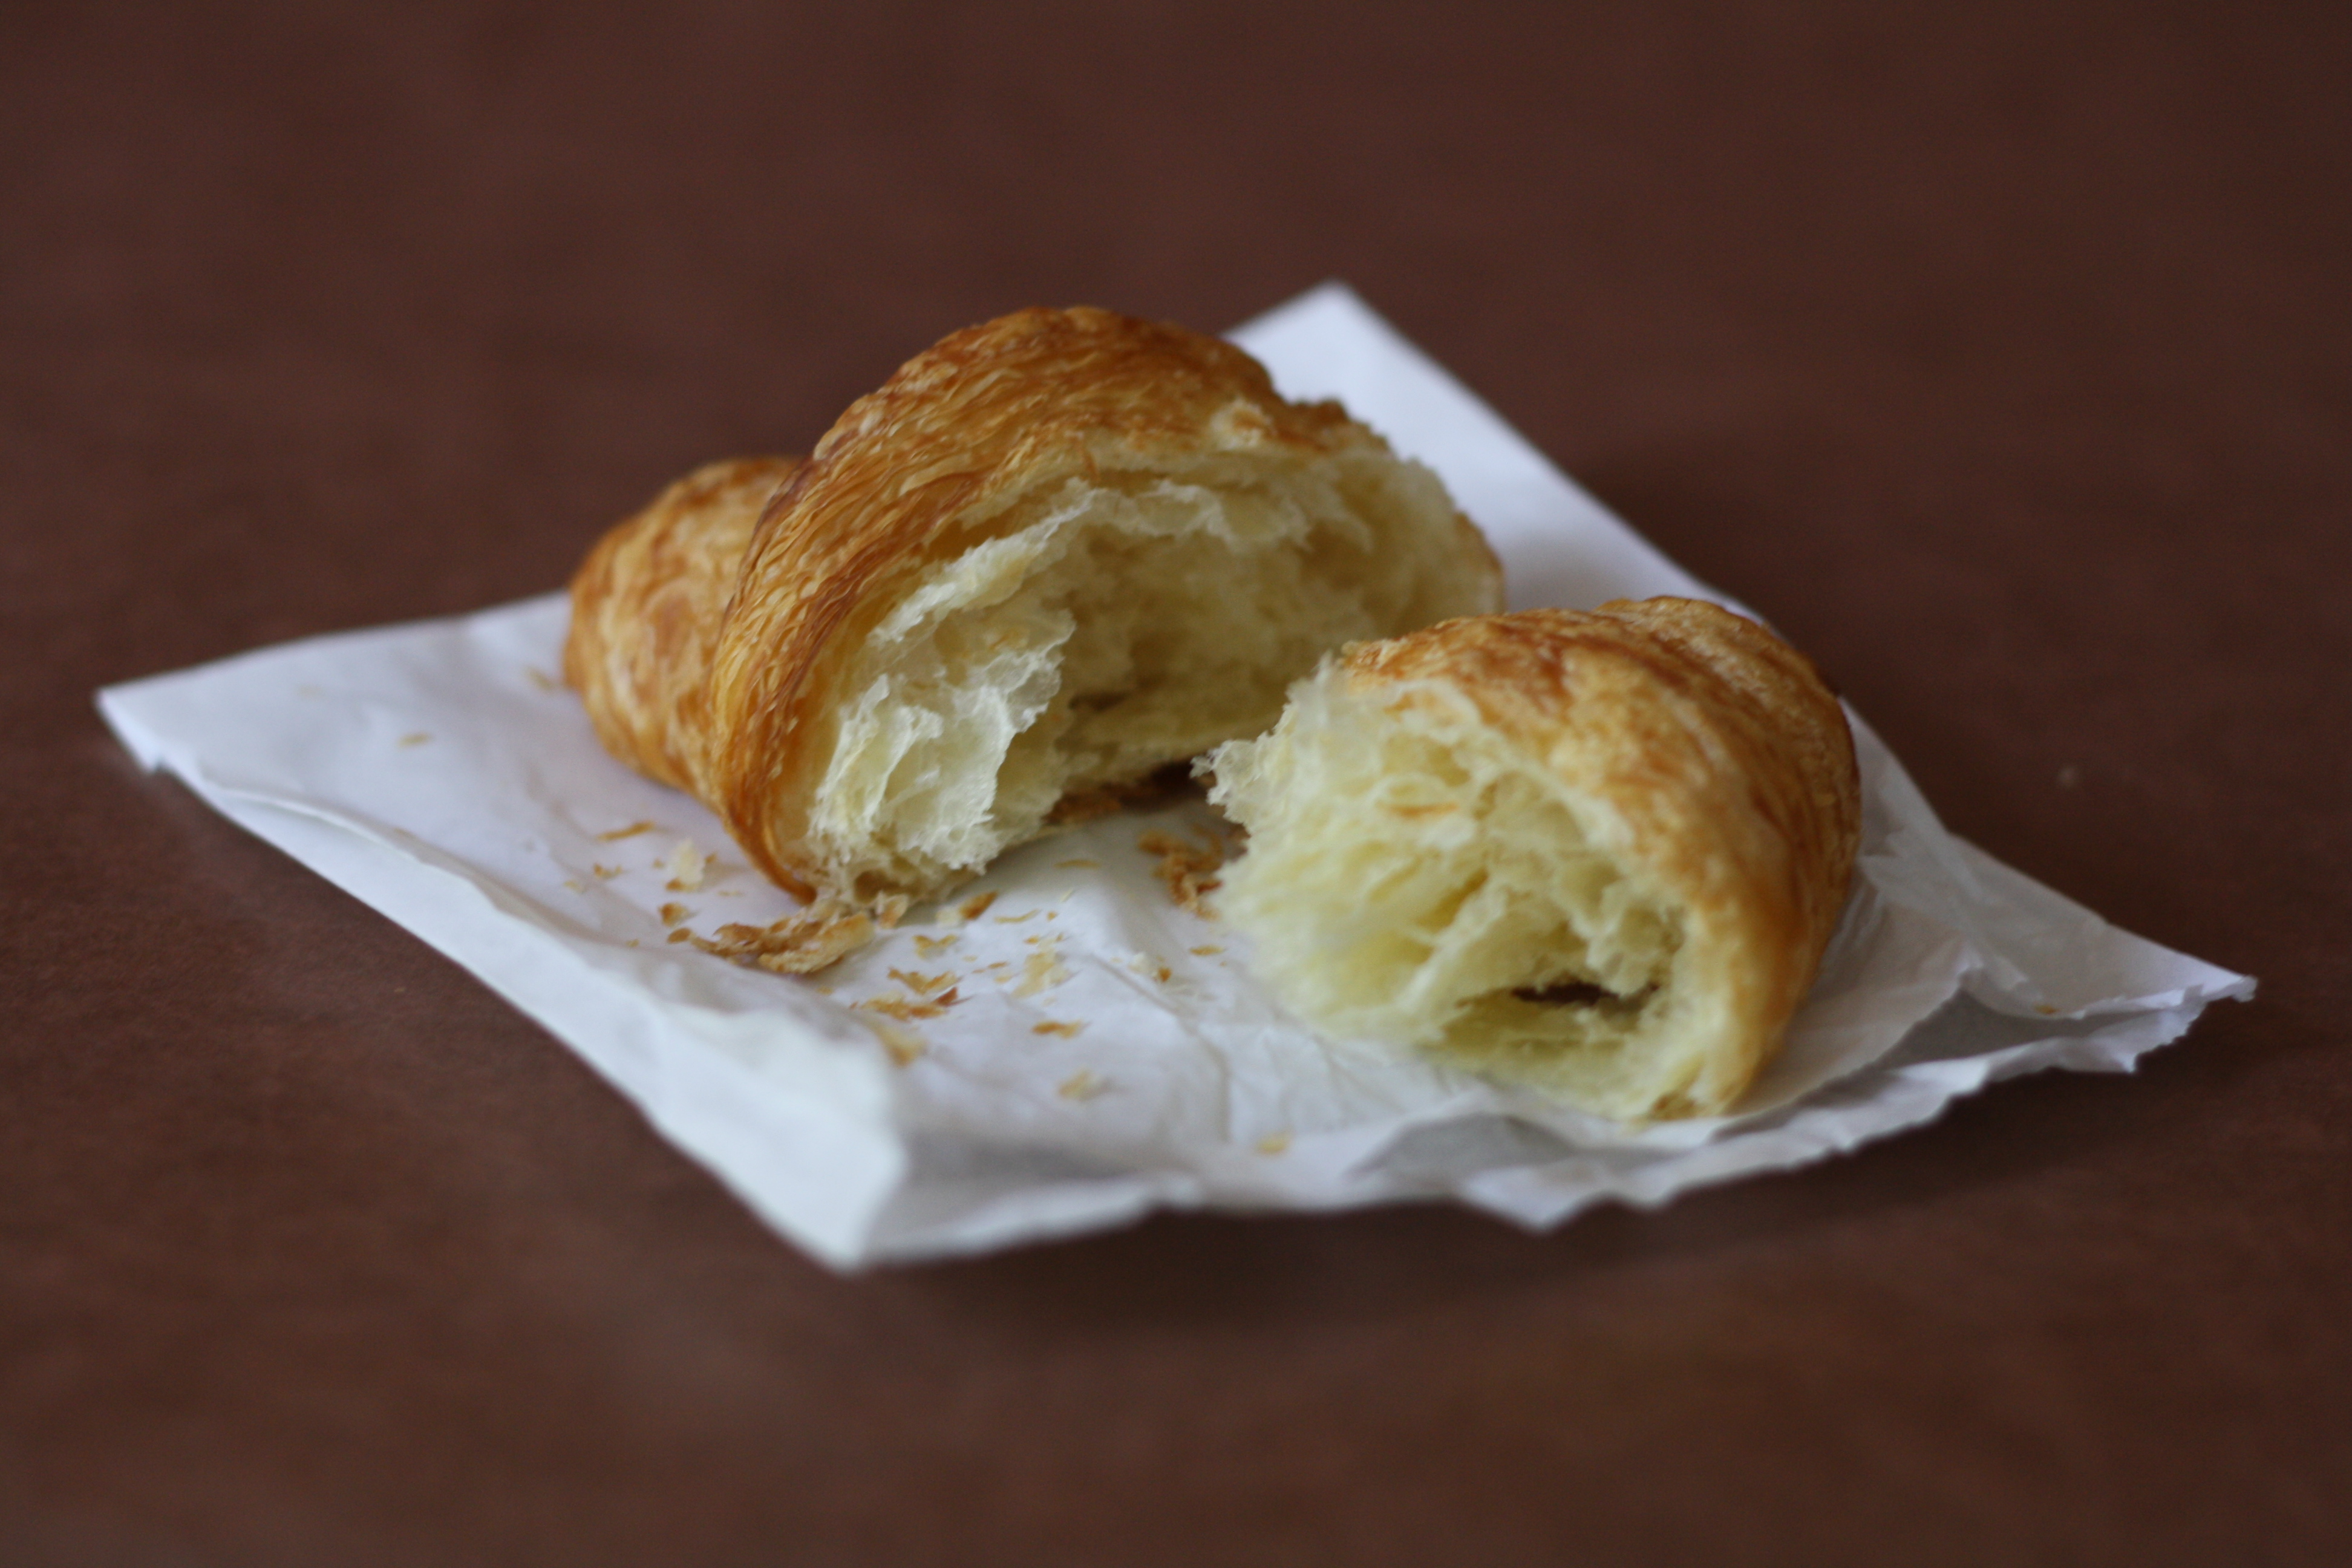 croissant, in half